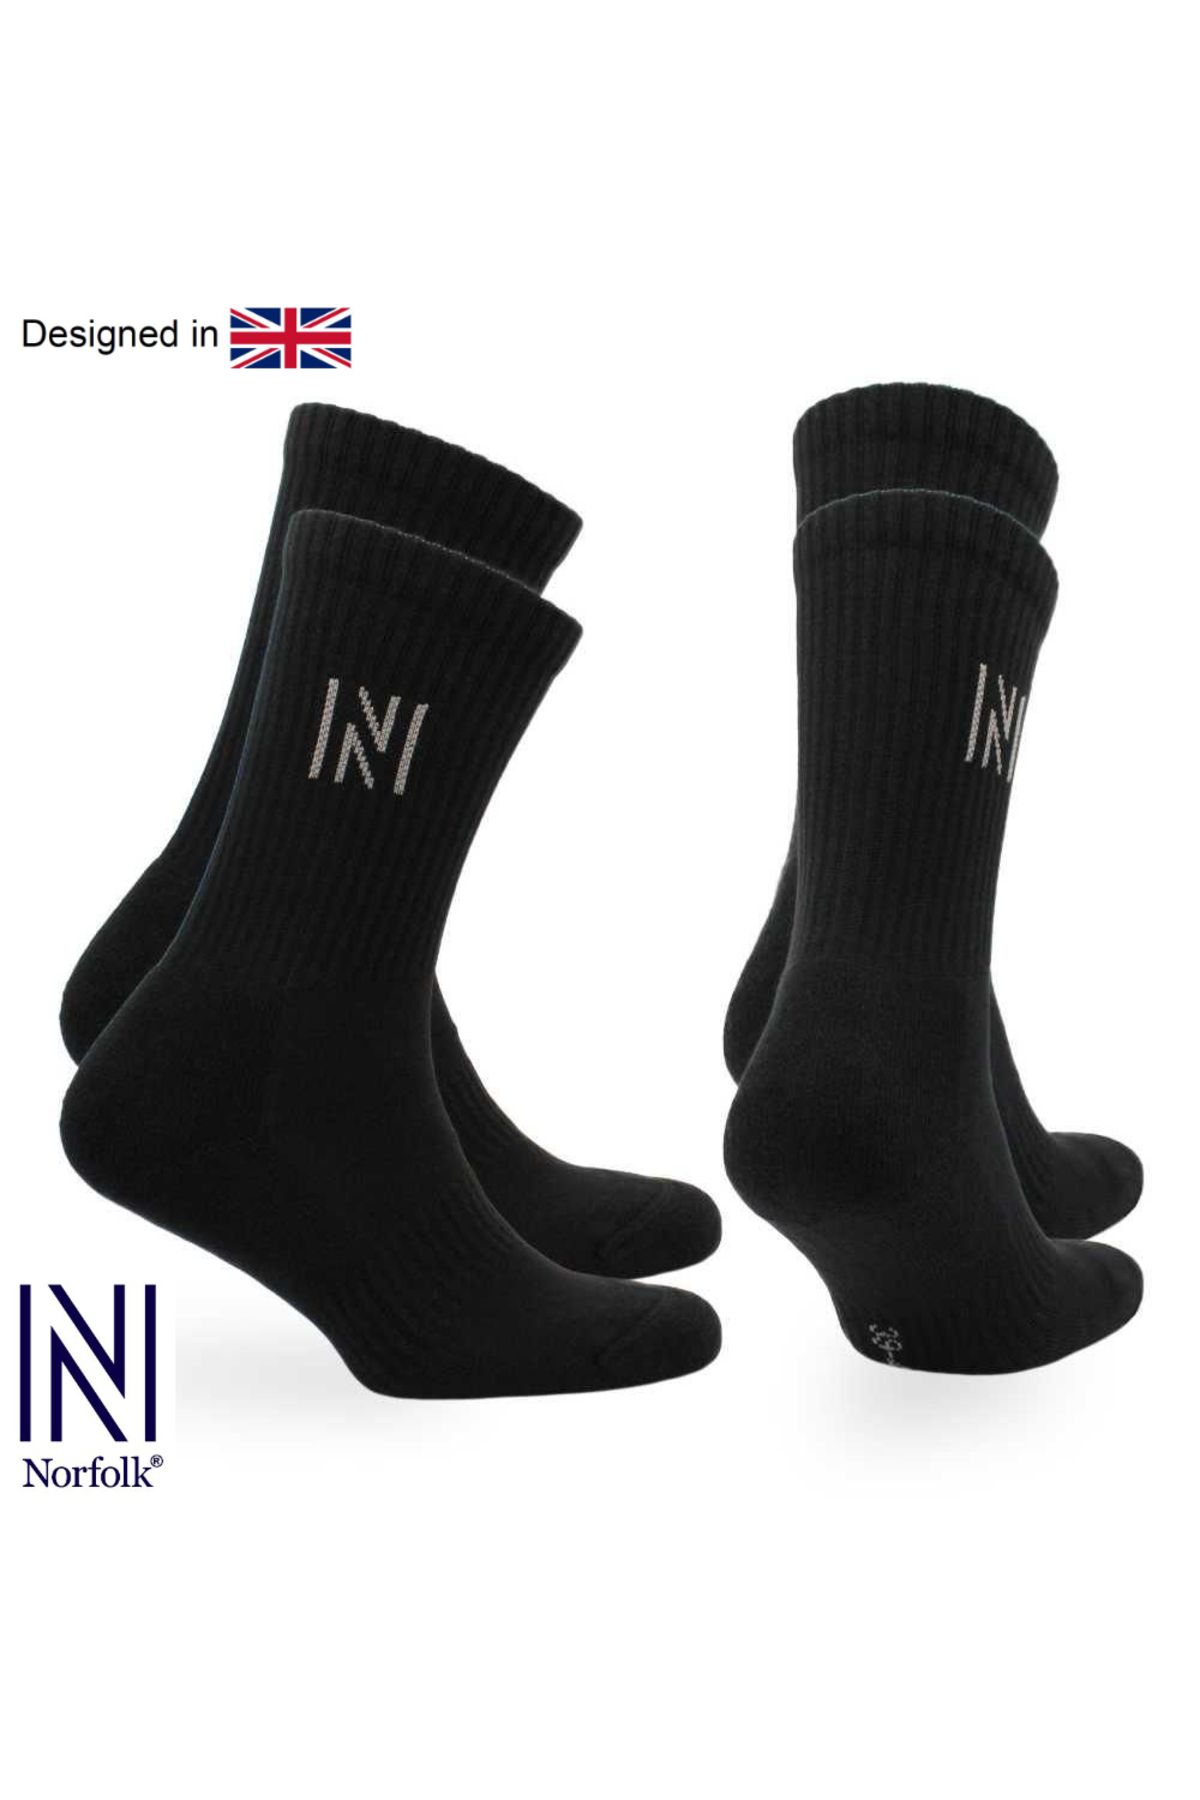 Norfolk Siyah Barkley Ikili Paket Yastıklamalı Pamuklu Günlük Çorap